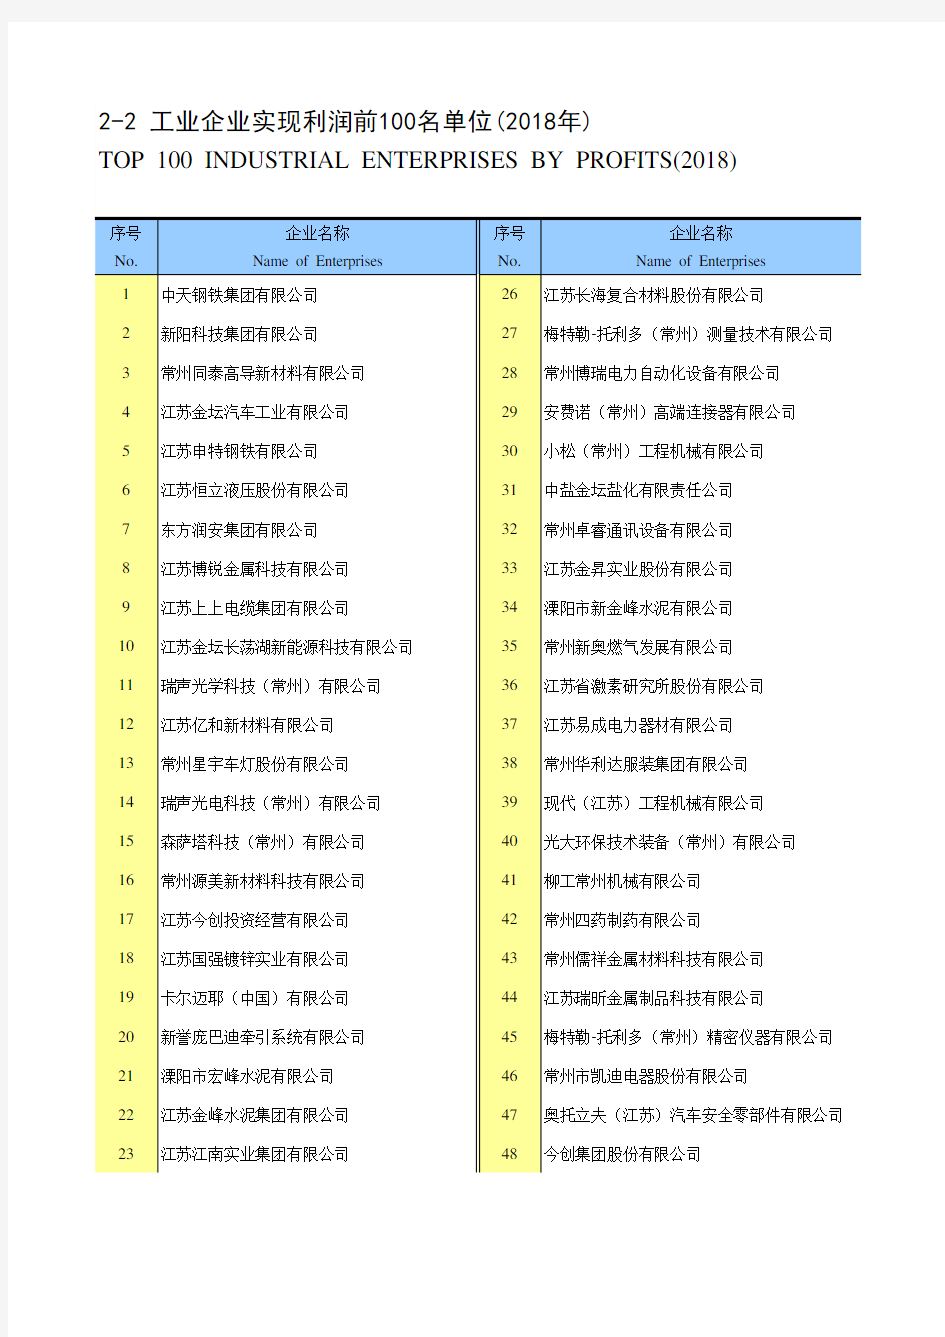 江苏常州市统计年鉴社会经济发展指标数据：2-2 工业企业实现利润前100名单位(2018年)